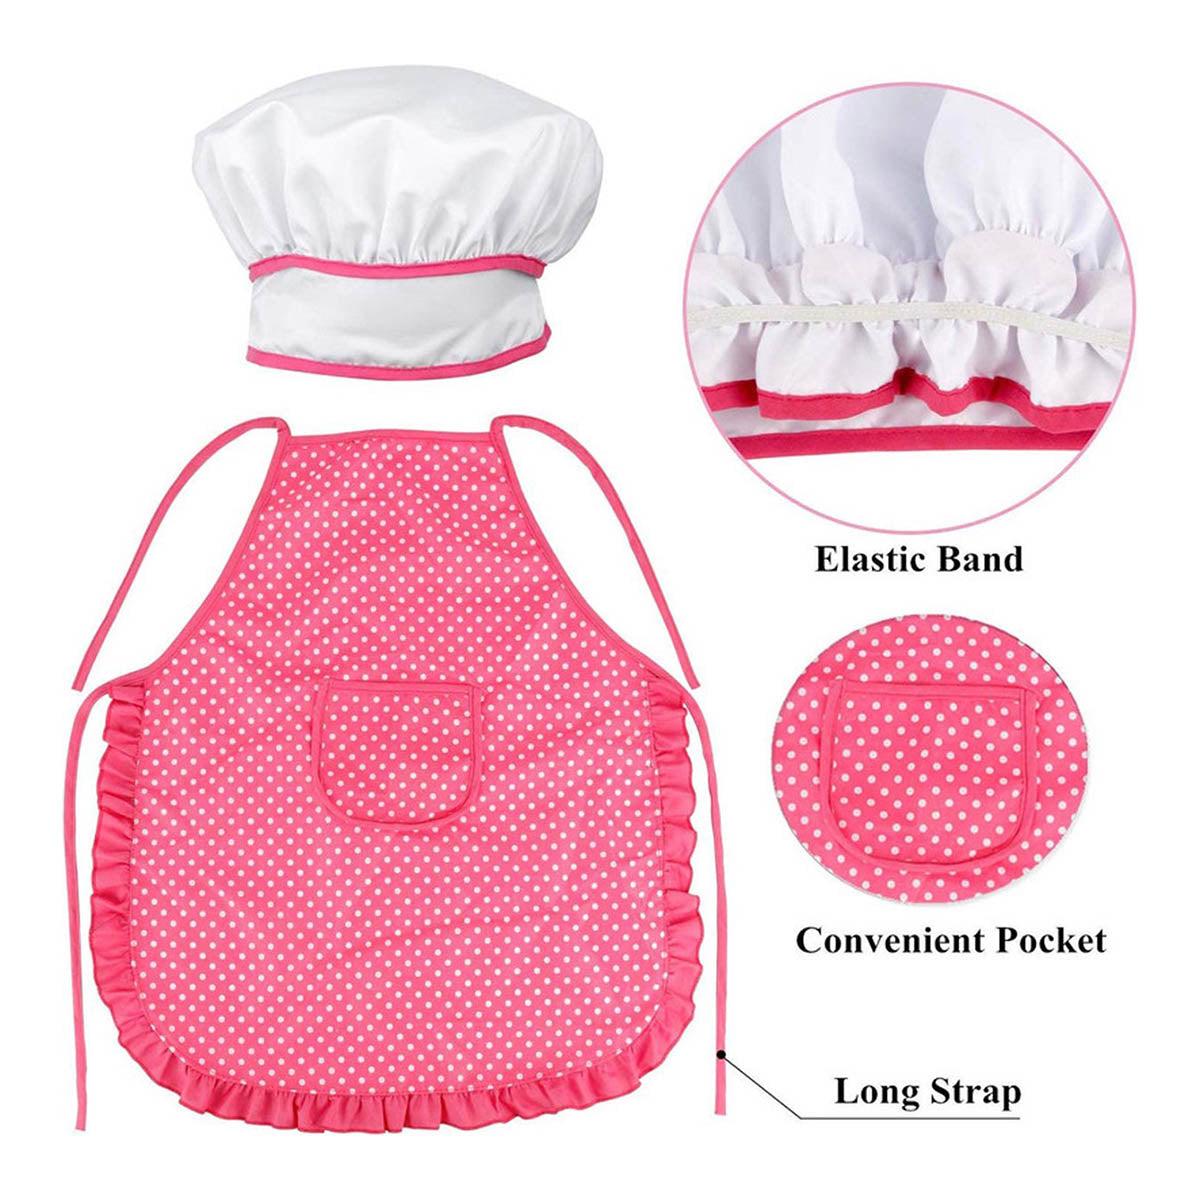 Ariko Ensemble de jeu de chef de cuisine de luxe | Tablier de cuisine rose comprenant un bonnet de cuisine, un gant de cuisine, un fouet, un rouleau à pâtisserie et une spatule | batterie de cuisine | Jeu de rôle | Dans une belle boîte cadeau |